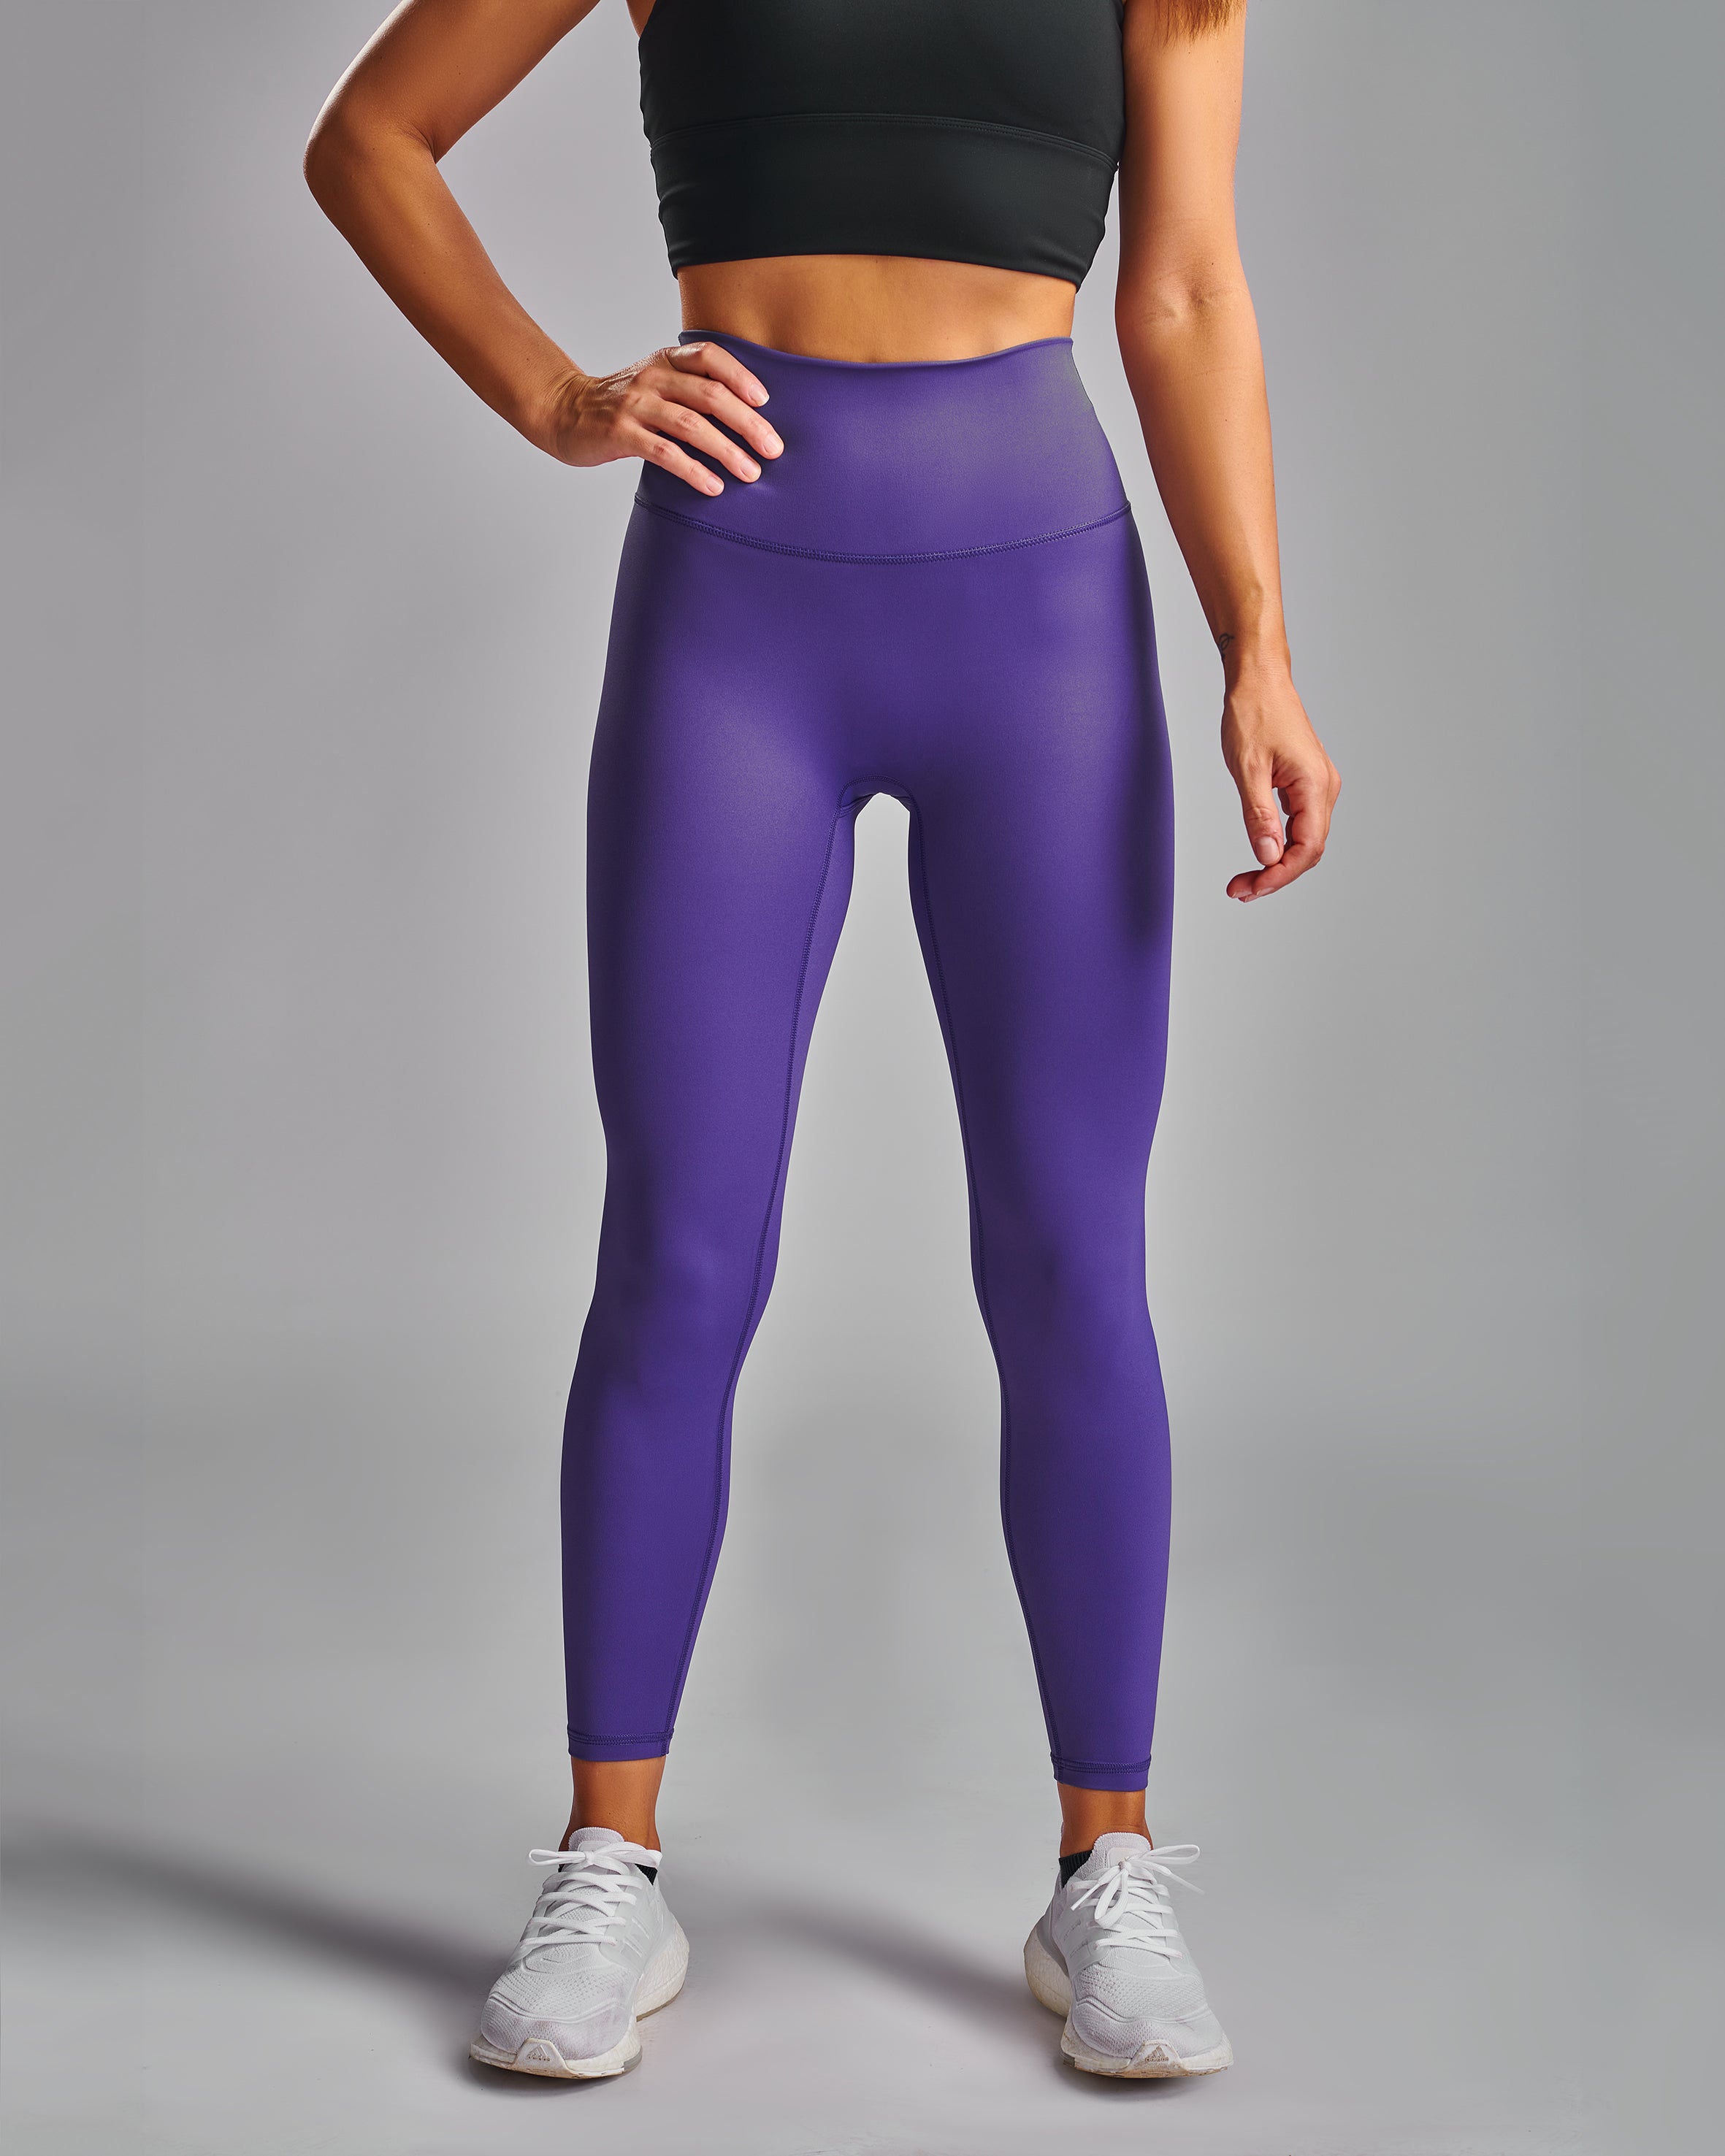 Align Leggings. Purple Ultralux fabric